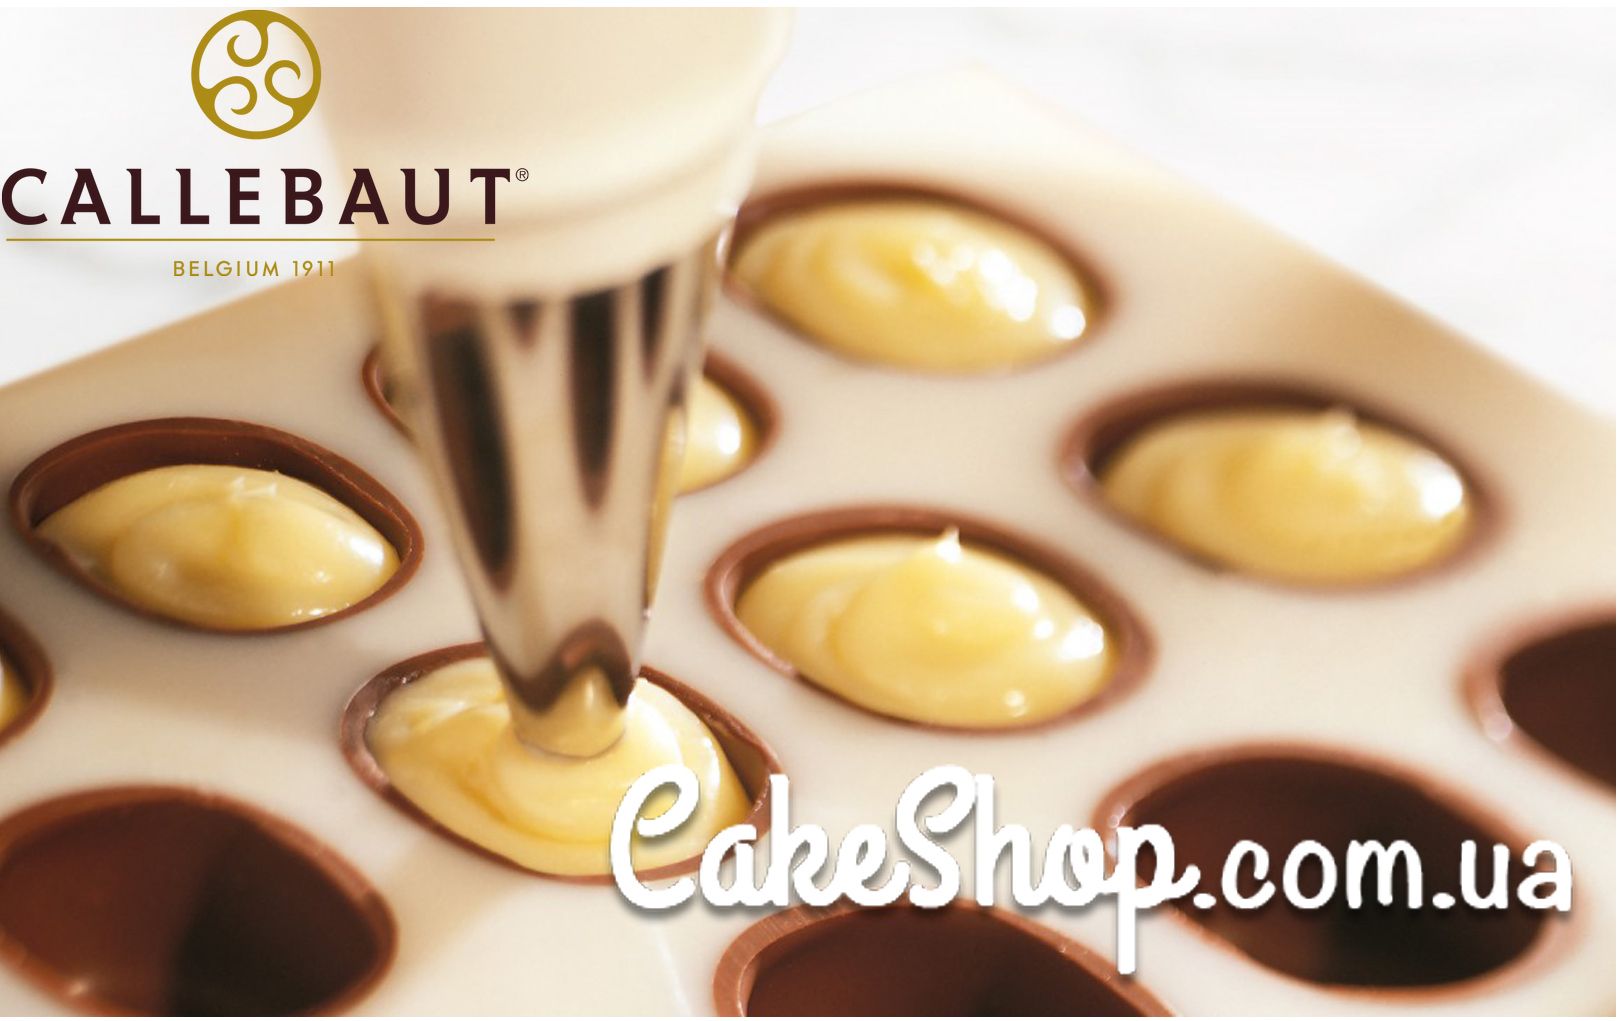 ⋗ Начинка Creme a la Carte Base з вершковим смаком  Callebaut, 200 г купити в Україні ➛ CakeShop.com.ua, фото